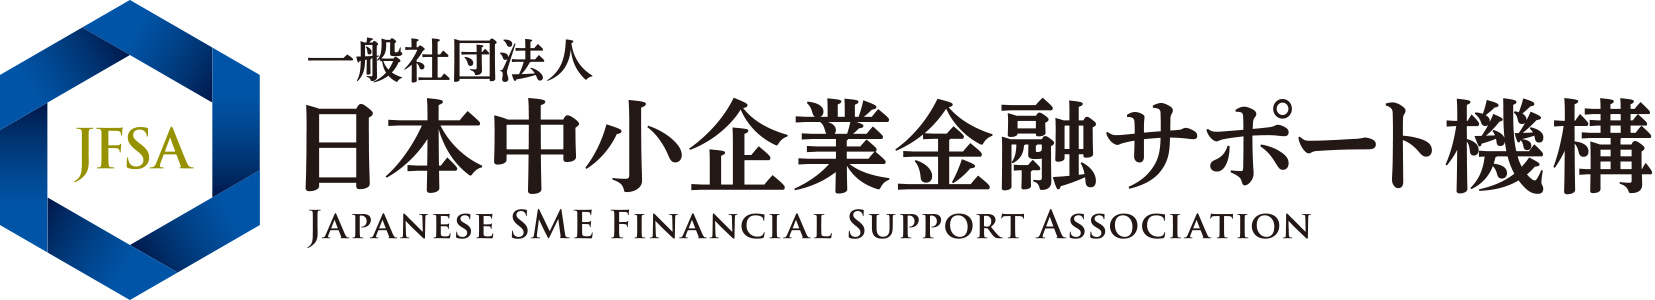 一般社団法人日本中小企業金融サポート機構バナー